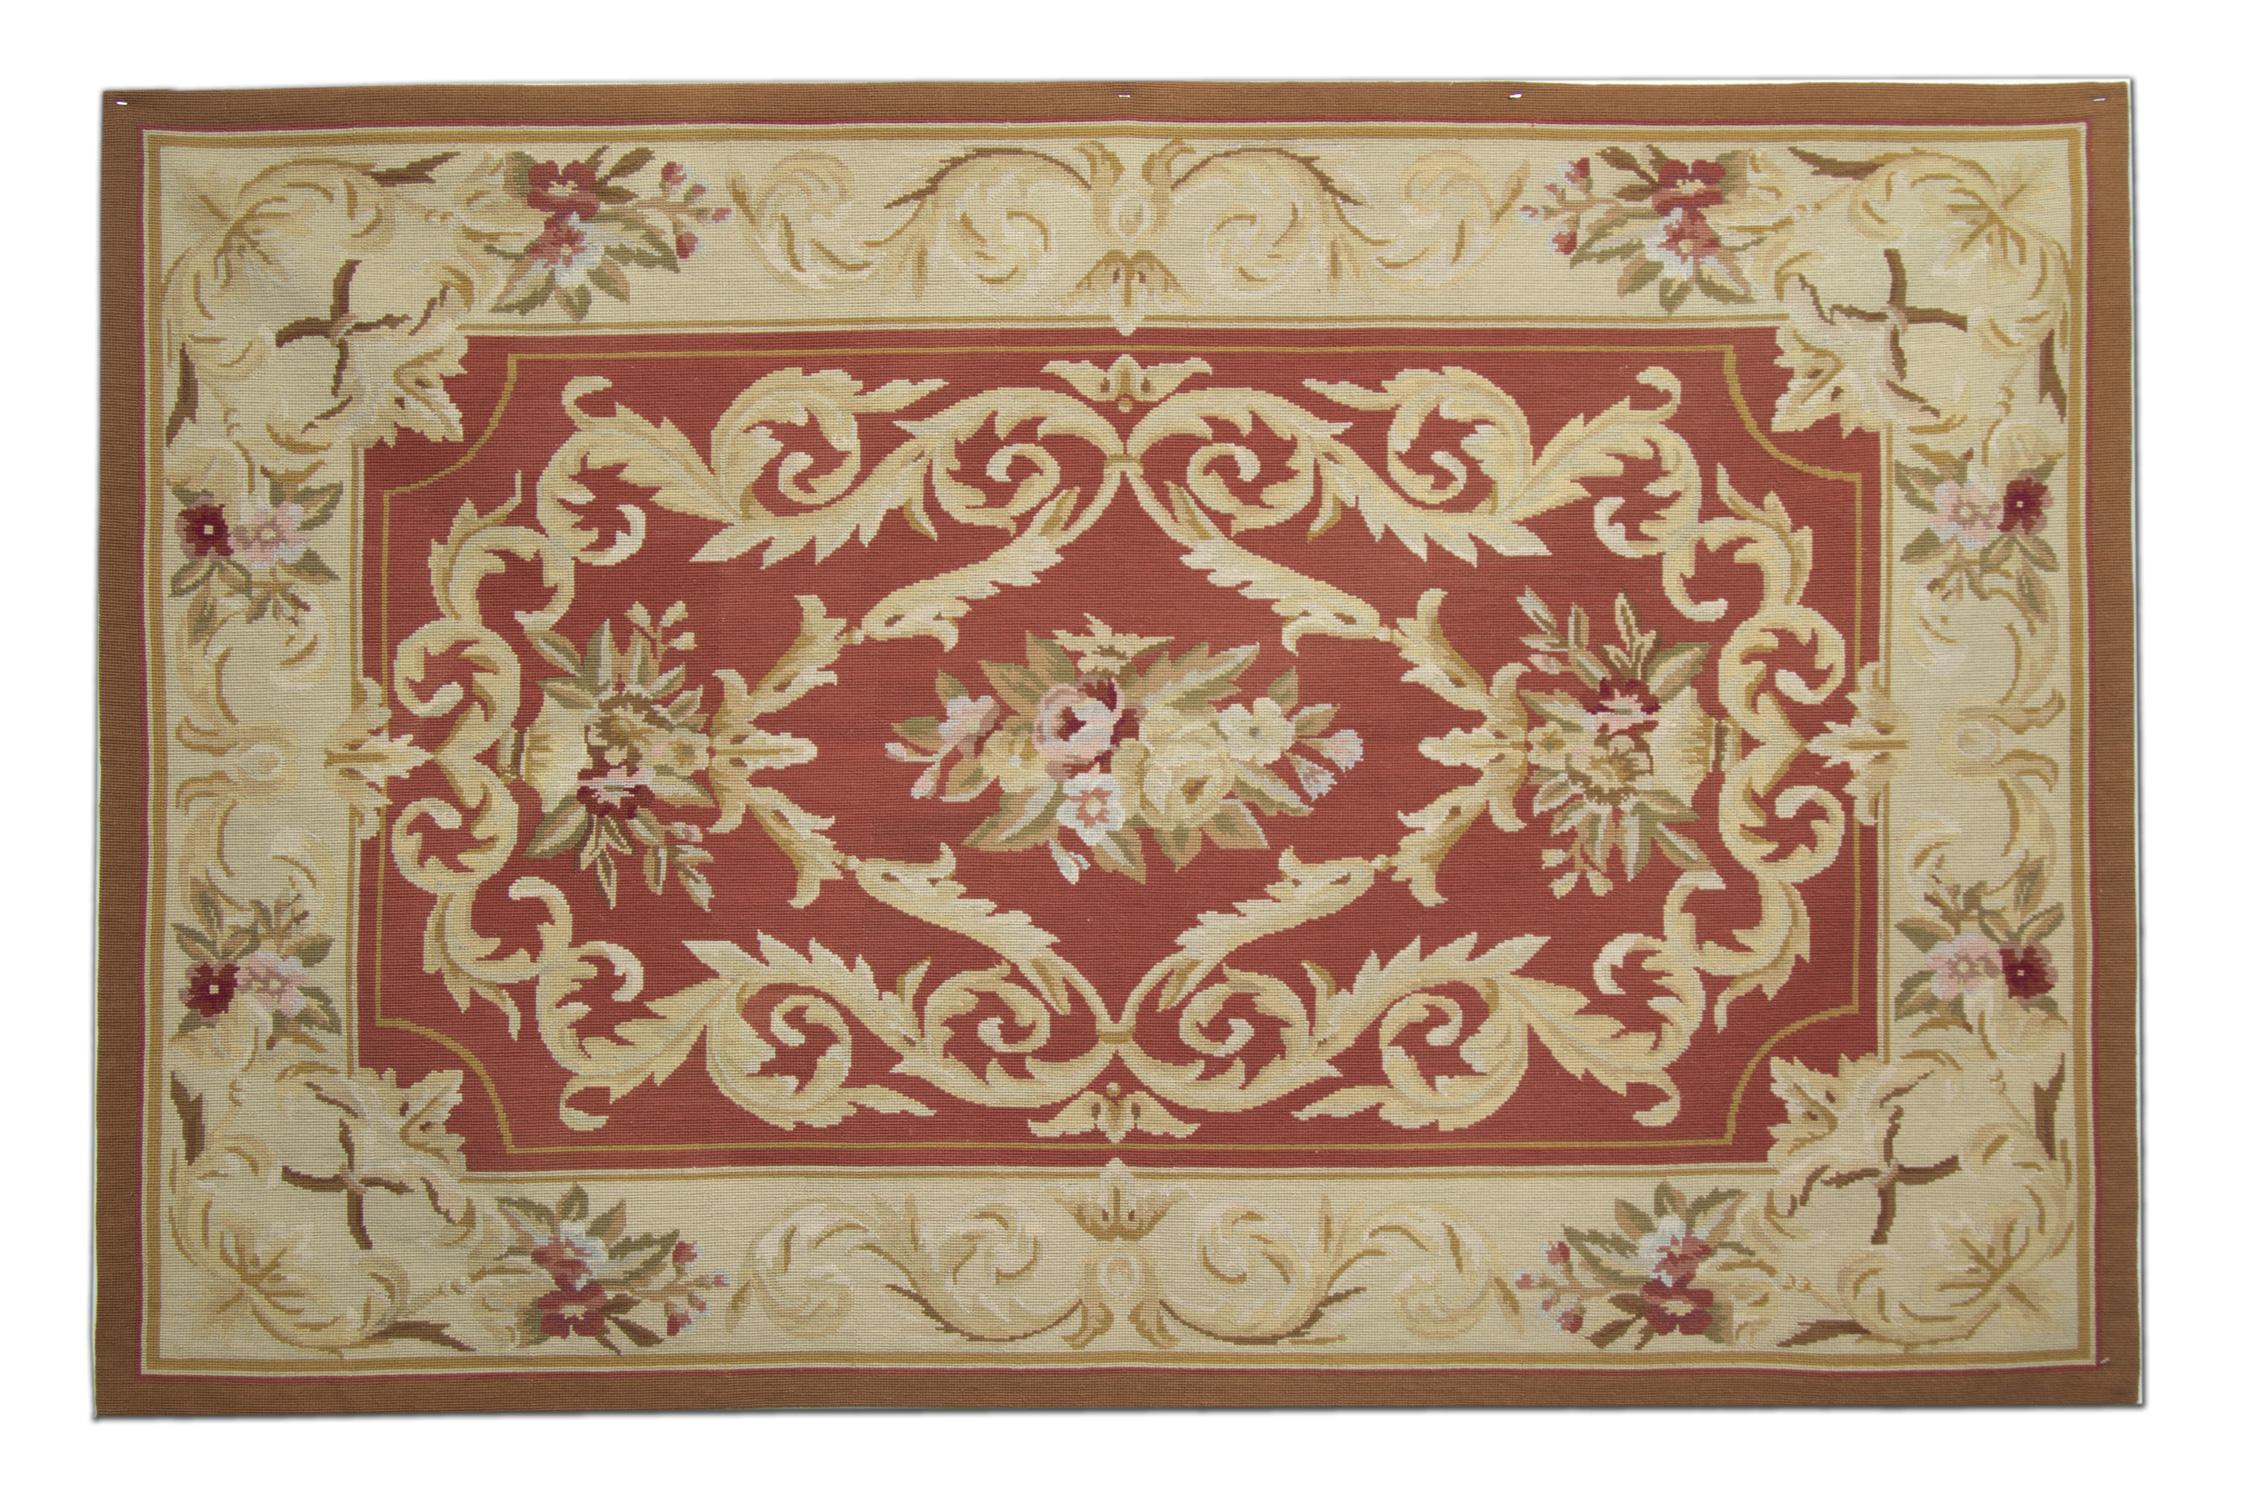 Cette tapisserie à l'aiguille simple mais élégante a été tissée à la main dans des couleurs rouge et beige. Le motif central a été tissé sur un fond rouge rouille et présente un médaillon floral symétrique. Le tout est ensuite encadré par une